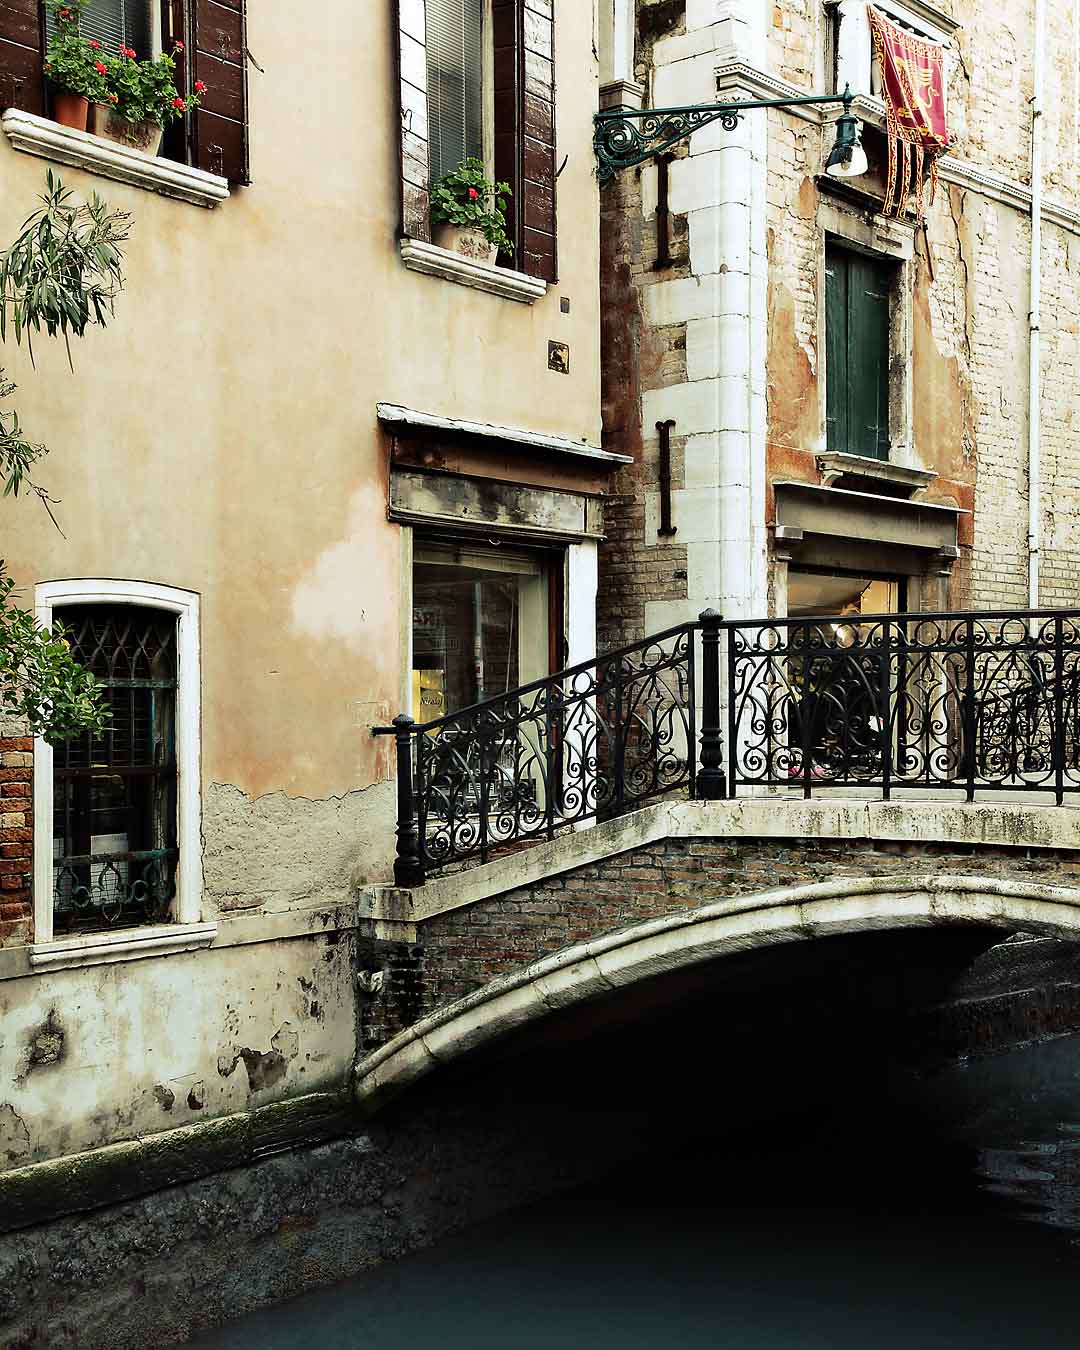 Canale di Castello #9, Venice, Italy, 2008